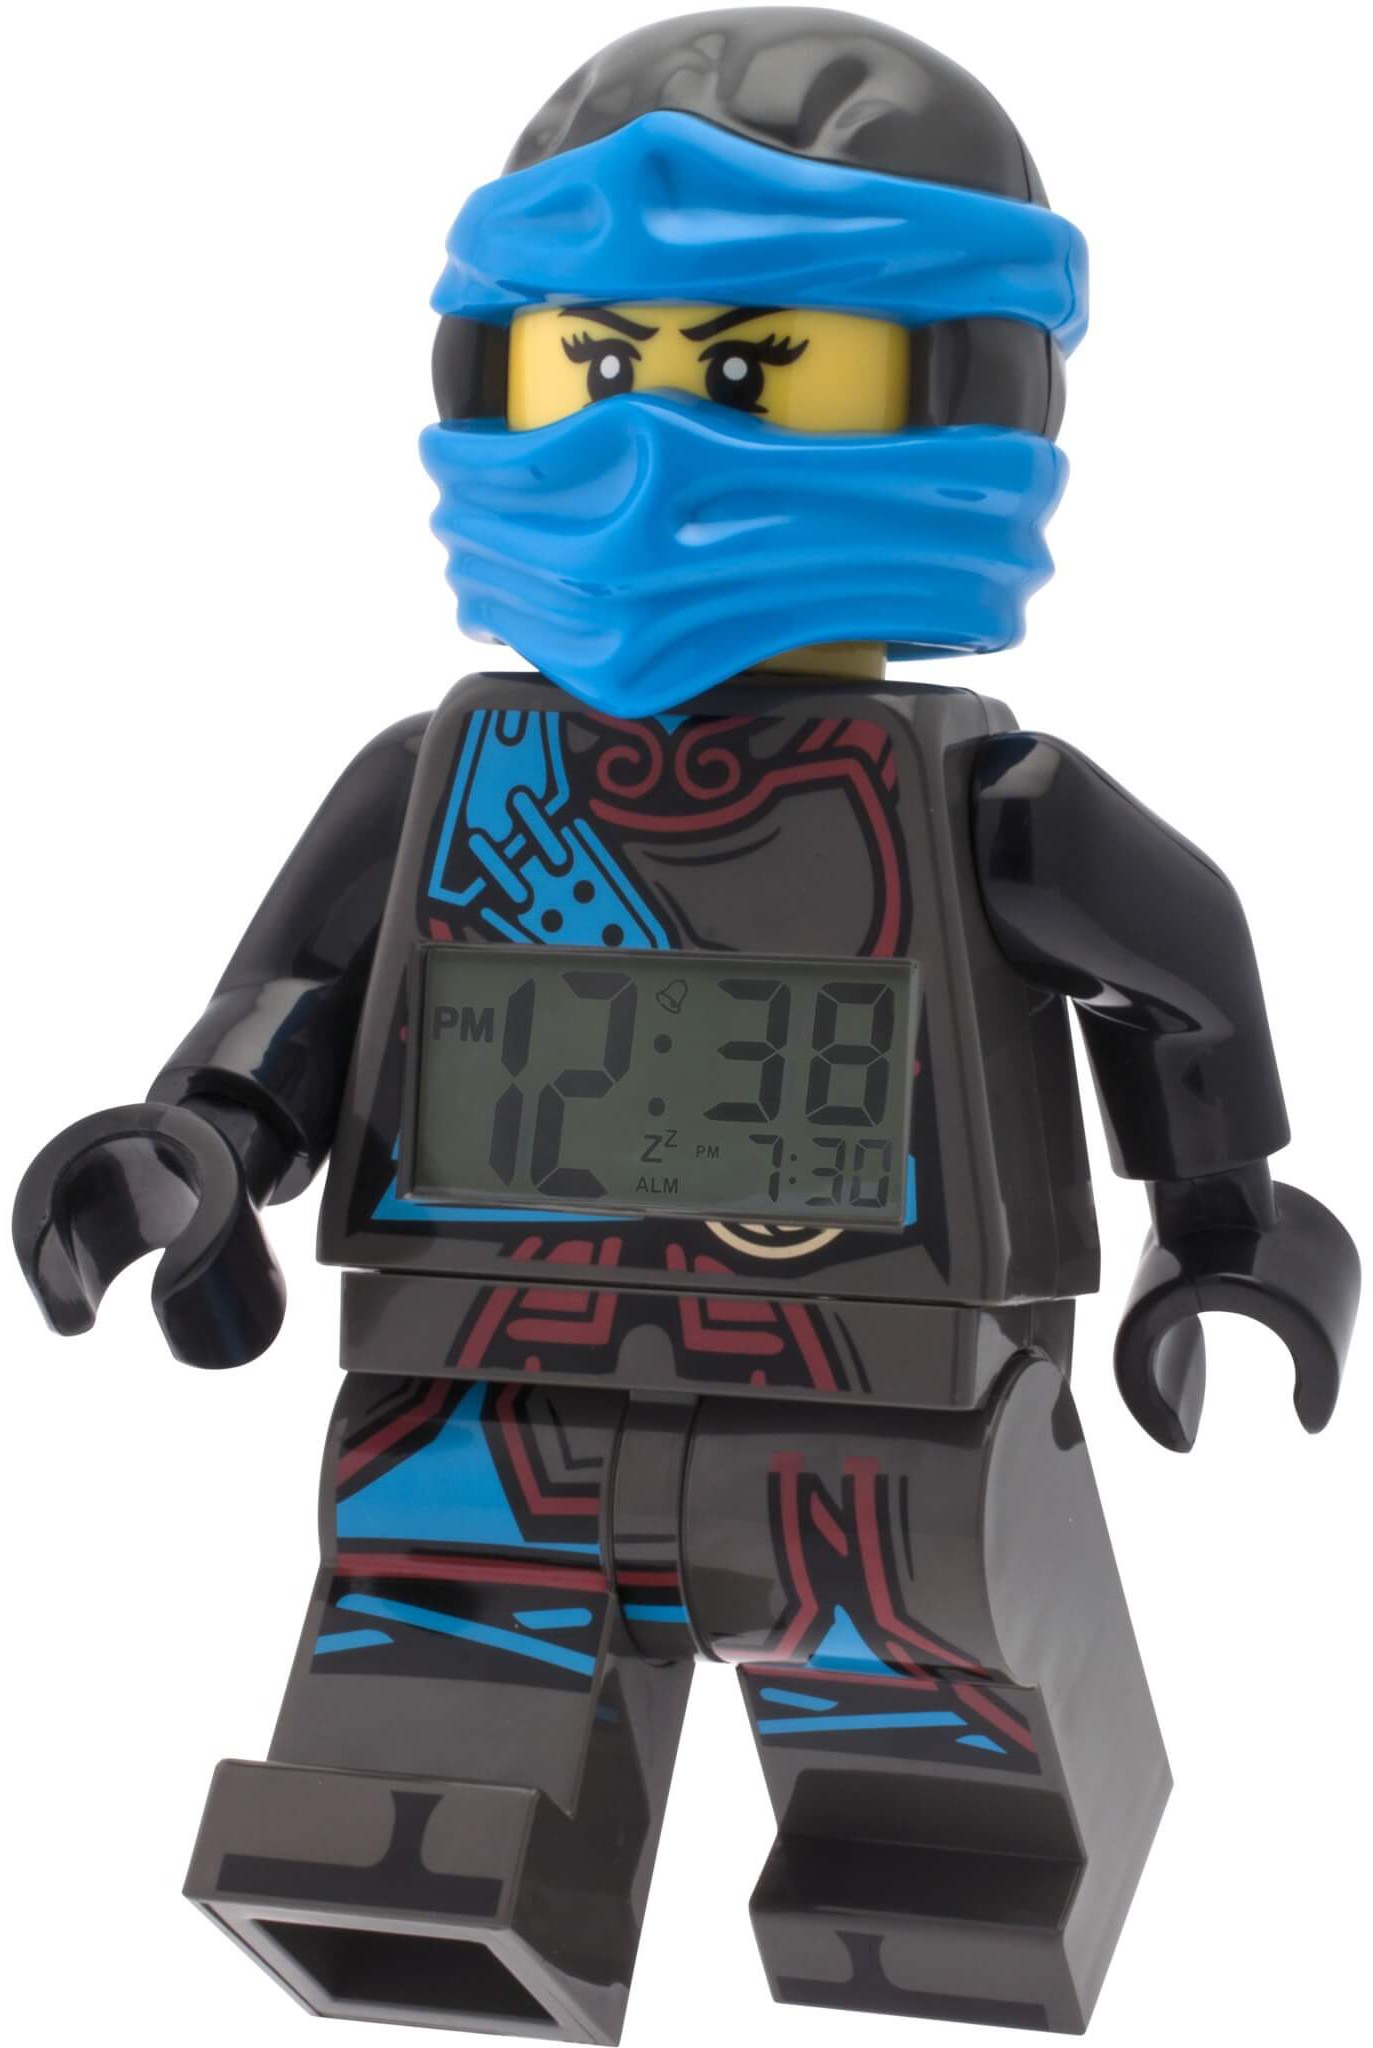 LEGO Ninjago - Time Twins Nya Alarm Clock - Heromic1373 x 2048